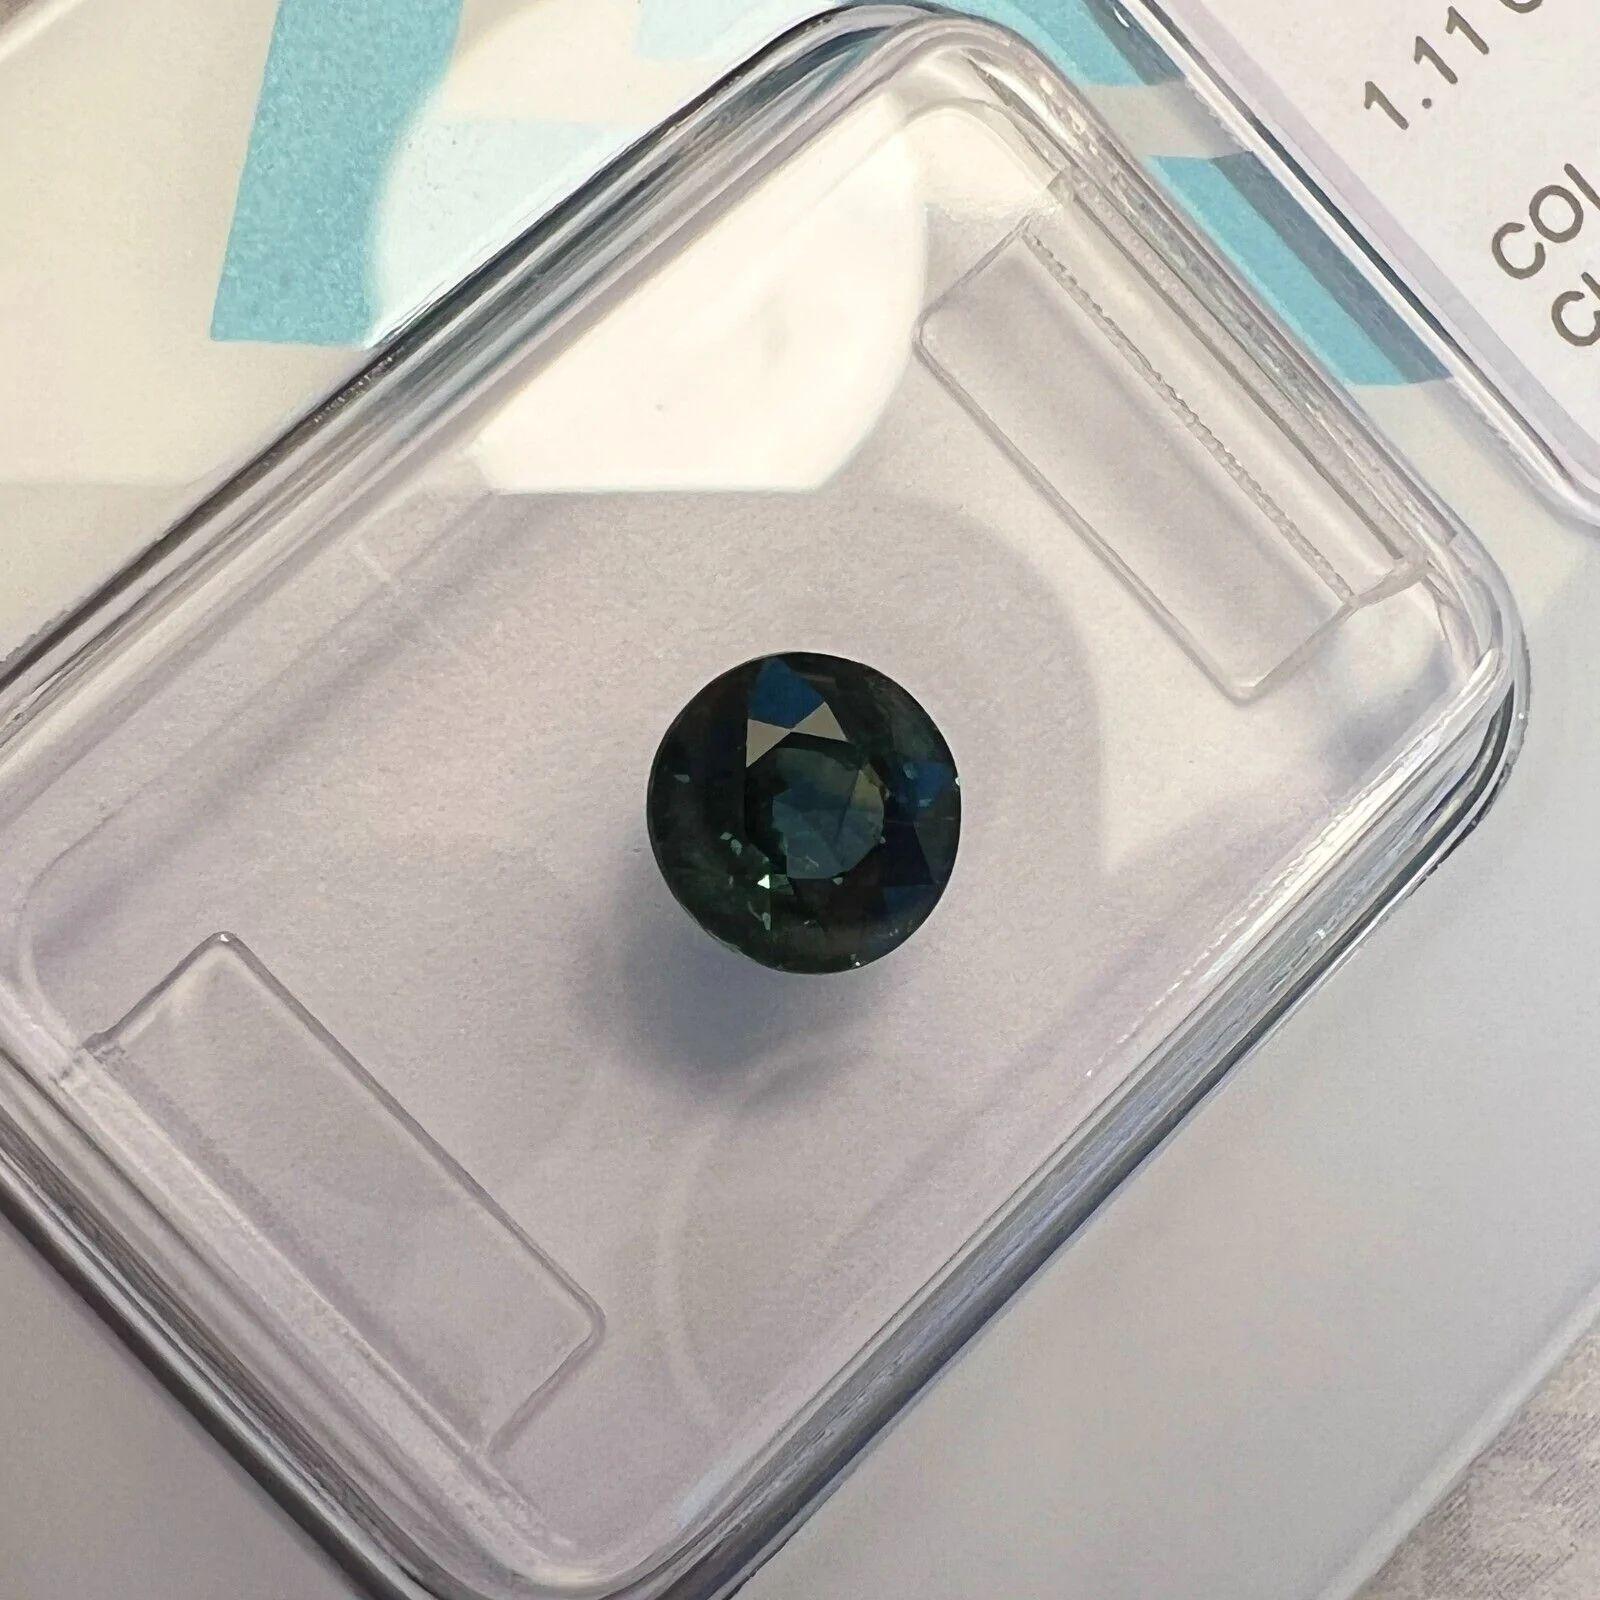 Taille ronde Saphir à couleur changeante certifié IGI de 1,11 carat, taille ronde non traitée et non chauffée, rare en vente